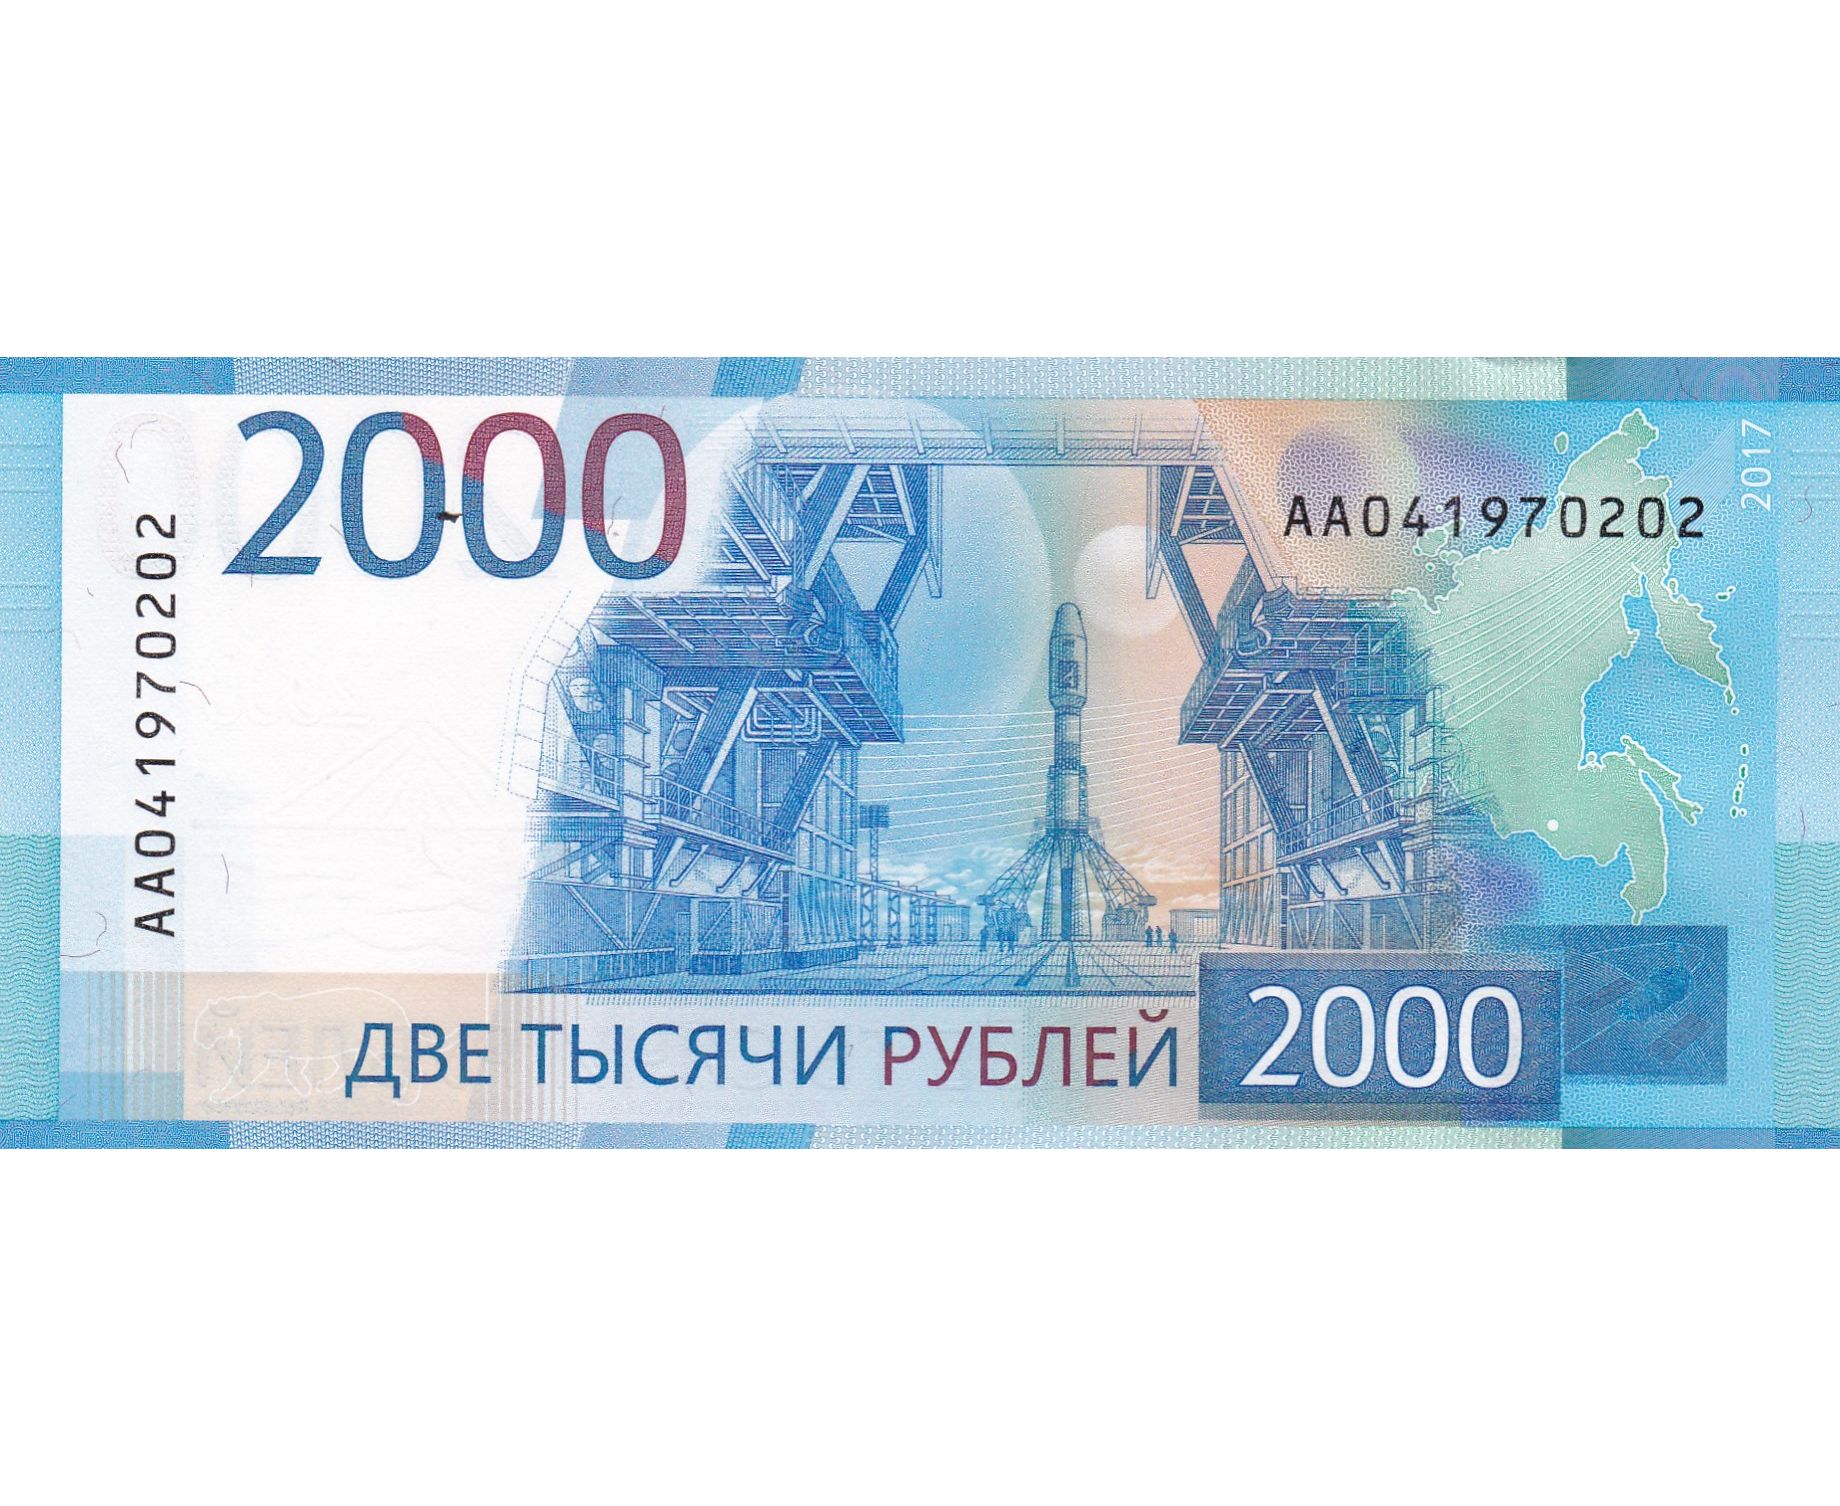 200 рублей t. 2000 Рублей банкнота. Купюры России 2000. 2 Тысячи рублей. Две тысячи рублей купюра.